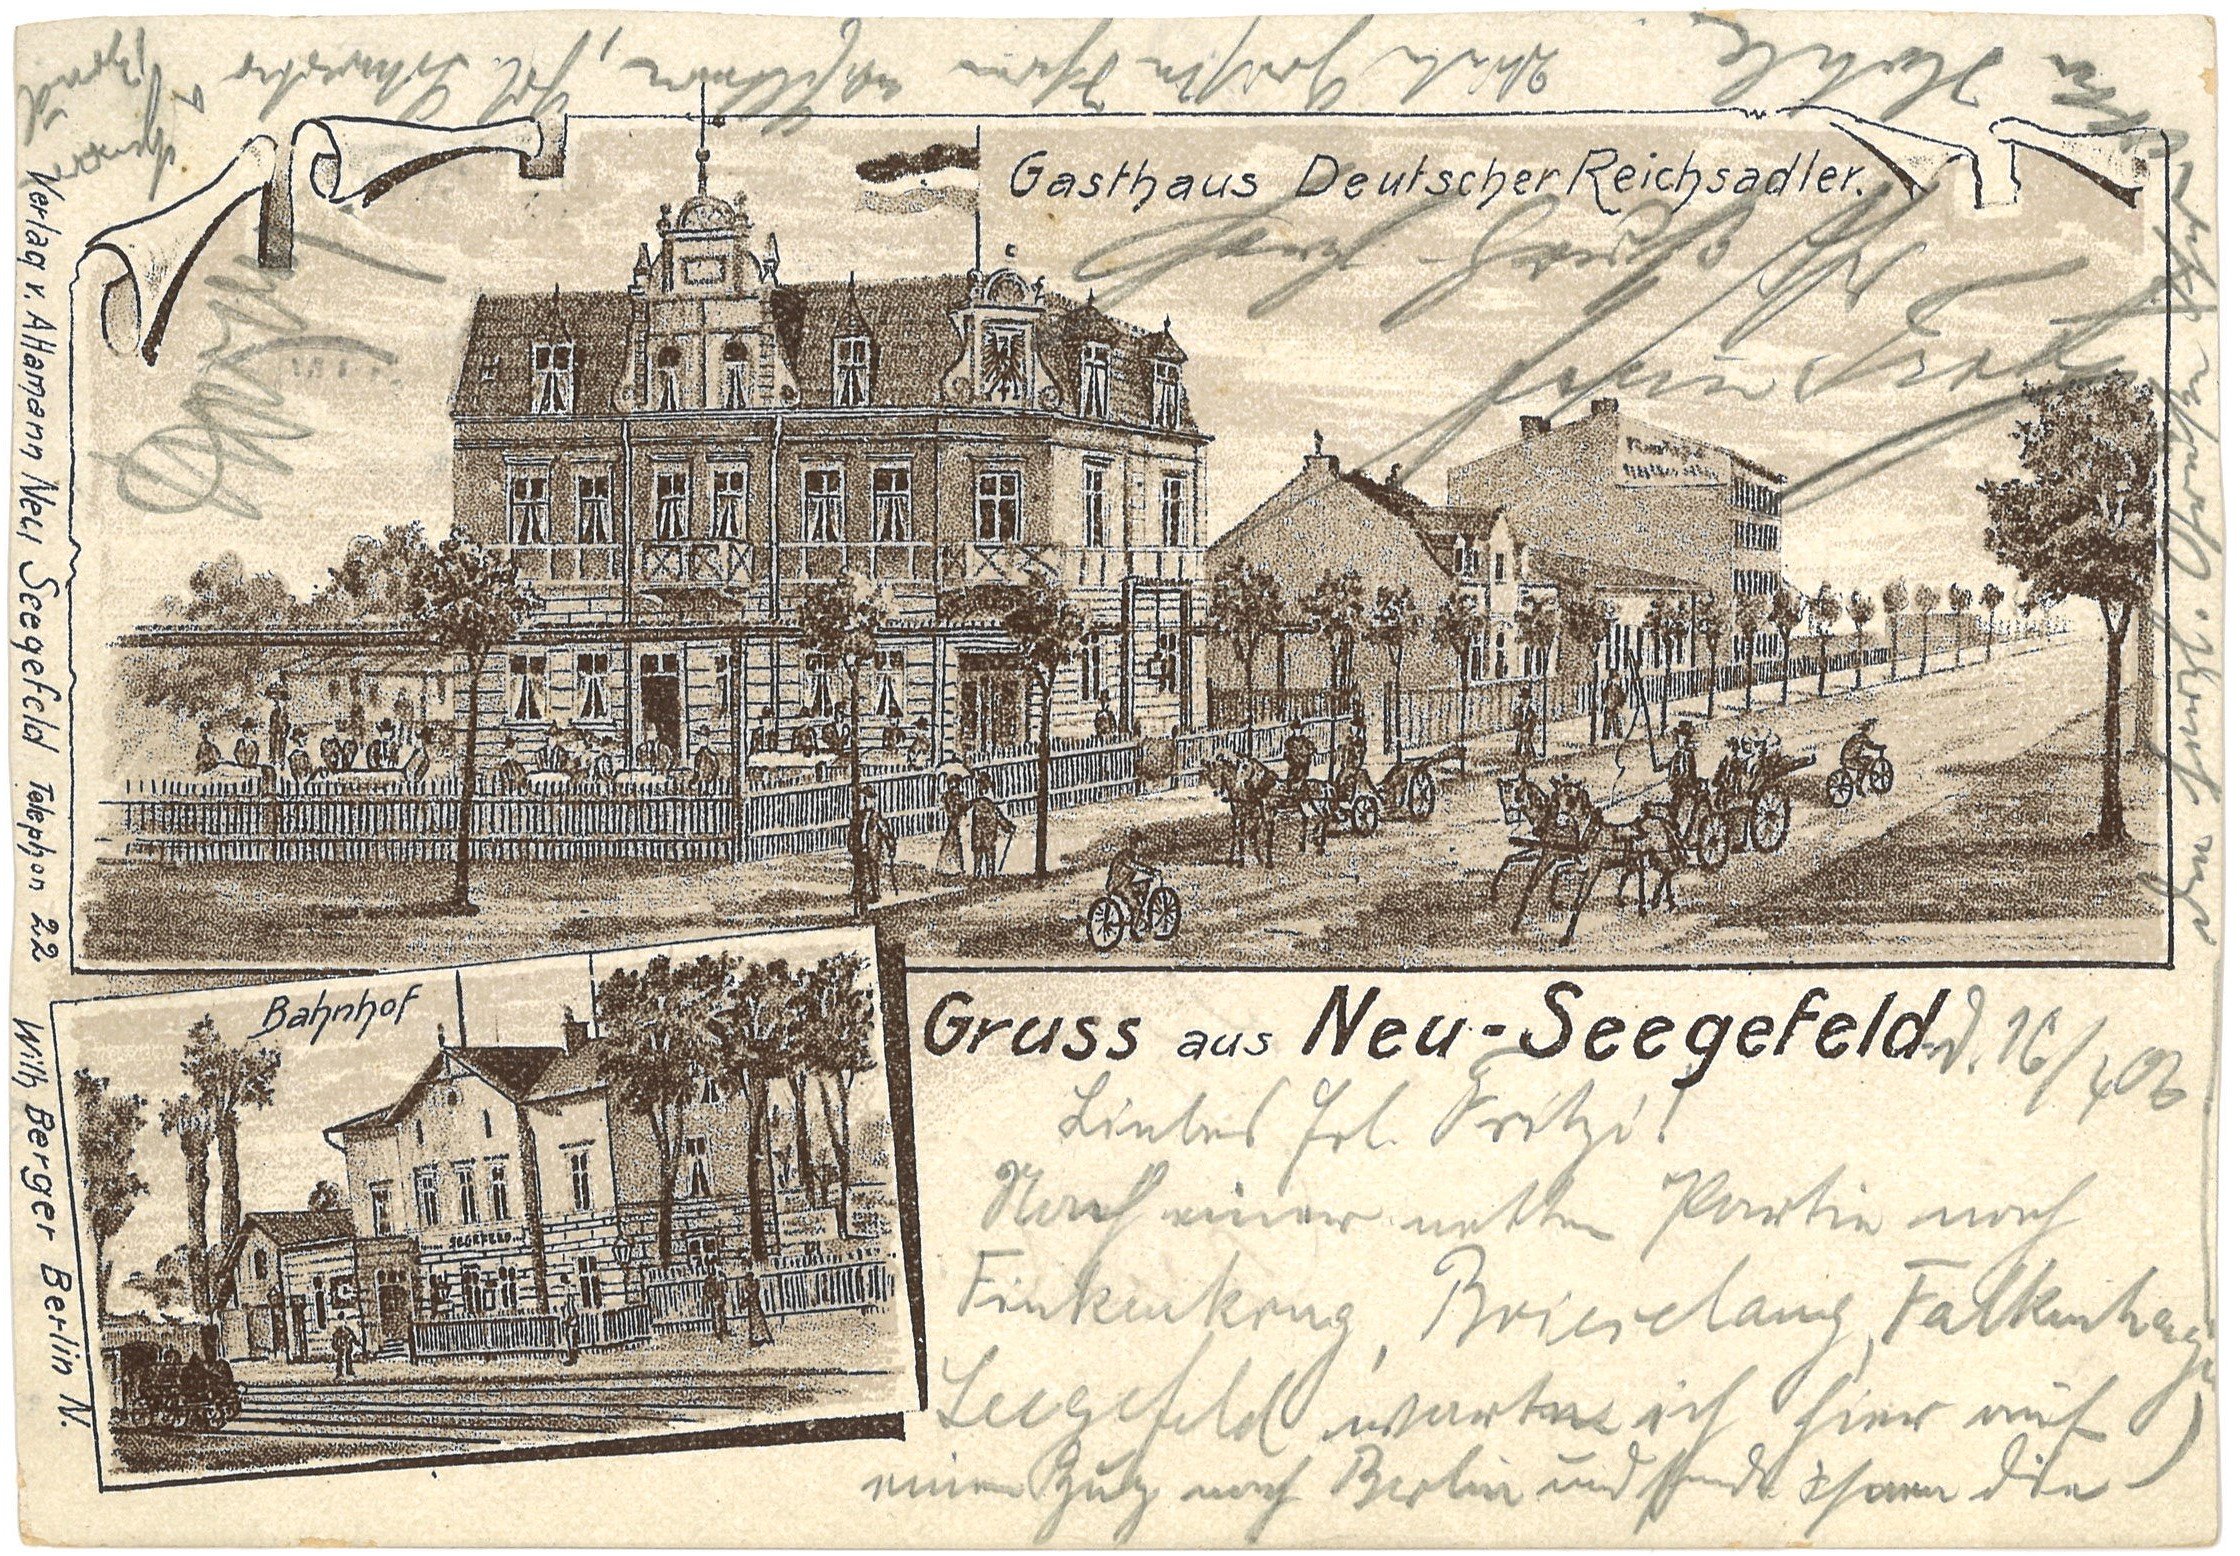 Falkensee-Neu Seegefeld: Zwei Ansichten (Landesgeschichtliche Vereinigung für die Mark Brandenburg e.V., Archiv CC BY)